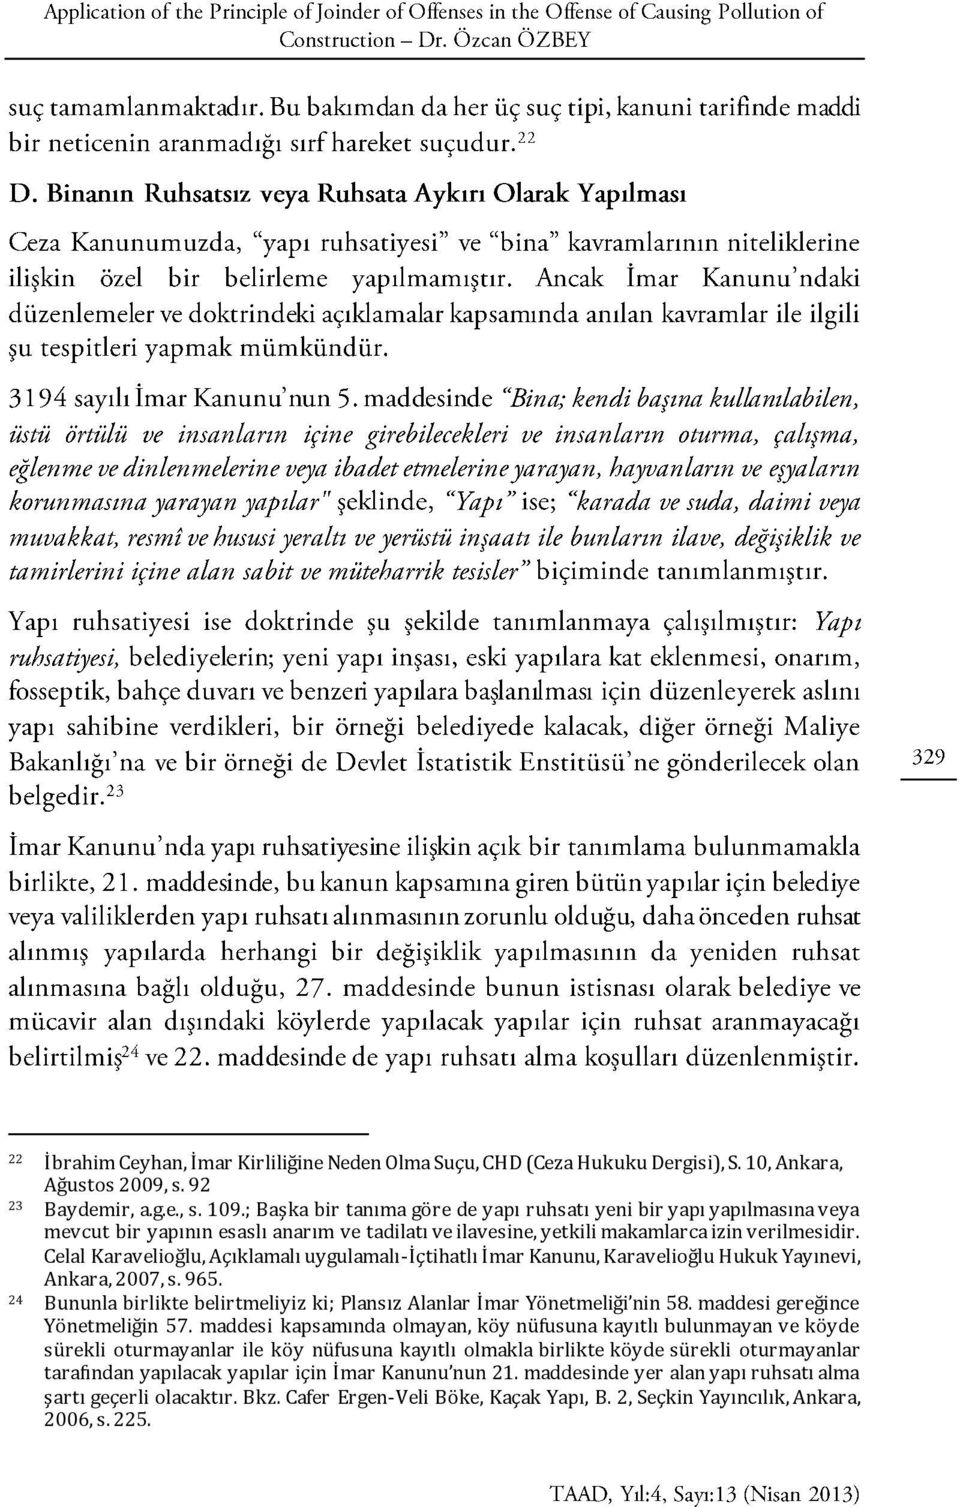 Celal Karavelioğlu, Açıklamalı uygulamalı-içtihatlı İmar Kanunu, Karavelioğlu Hukuk Yayınevi, Ankara, 2007, s. 965. 24 Bununla birlikte belirtmeliyiz ki; Plansız Alanlar İmar Yönetmeliği nin 58.